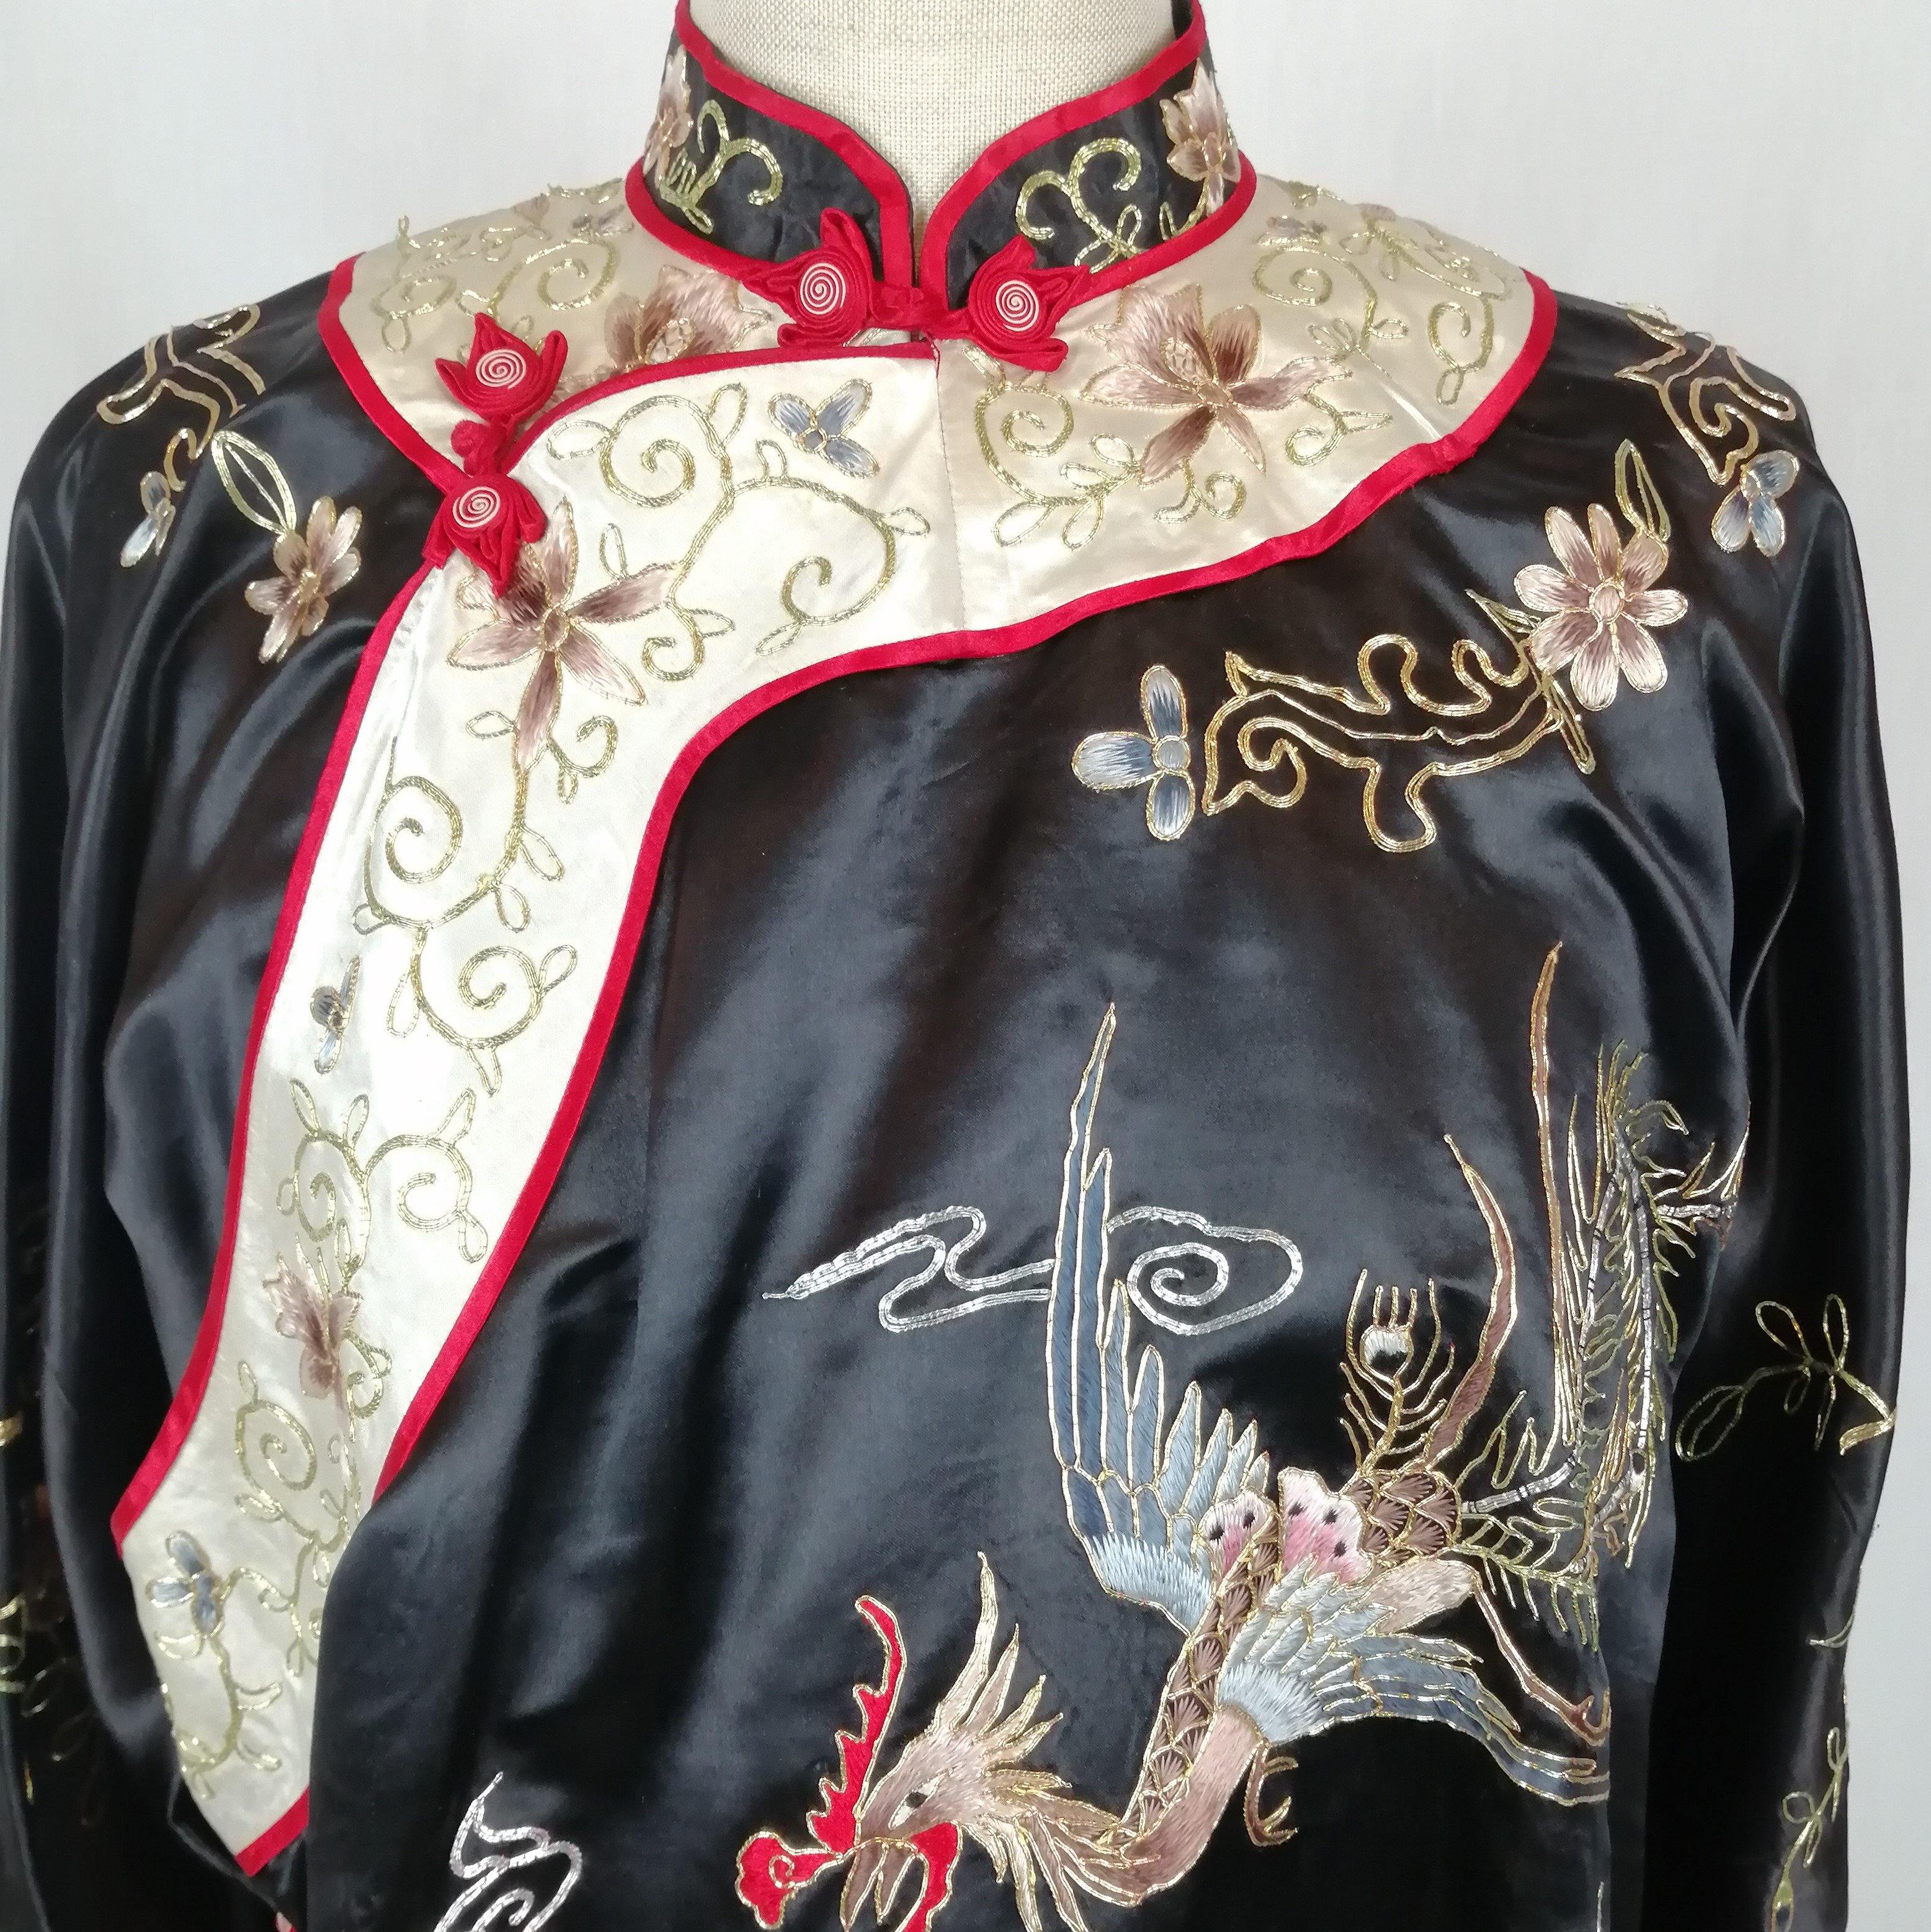 Coq et dragon - Tenue Ancienne - Au Bonheur Des Dames Toulouse - ABDD - Kimono, Soie, Vintage, Vêtement